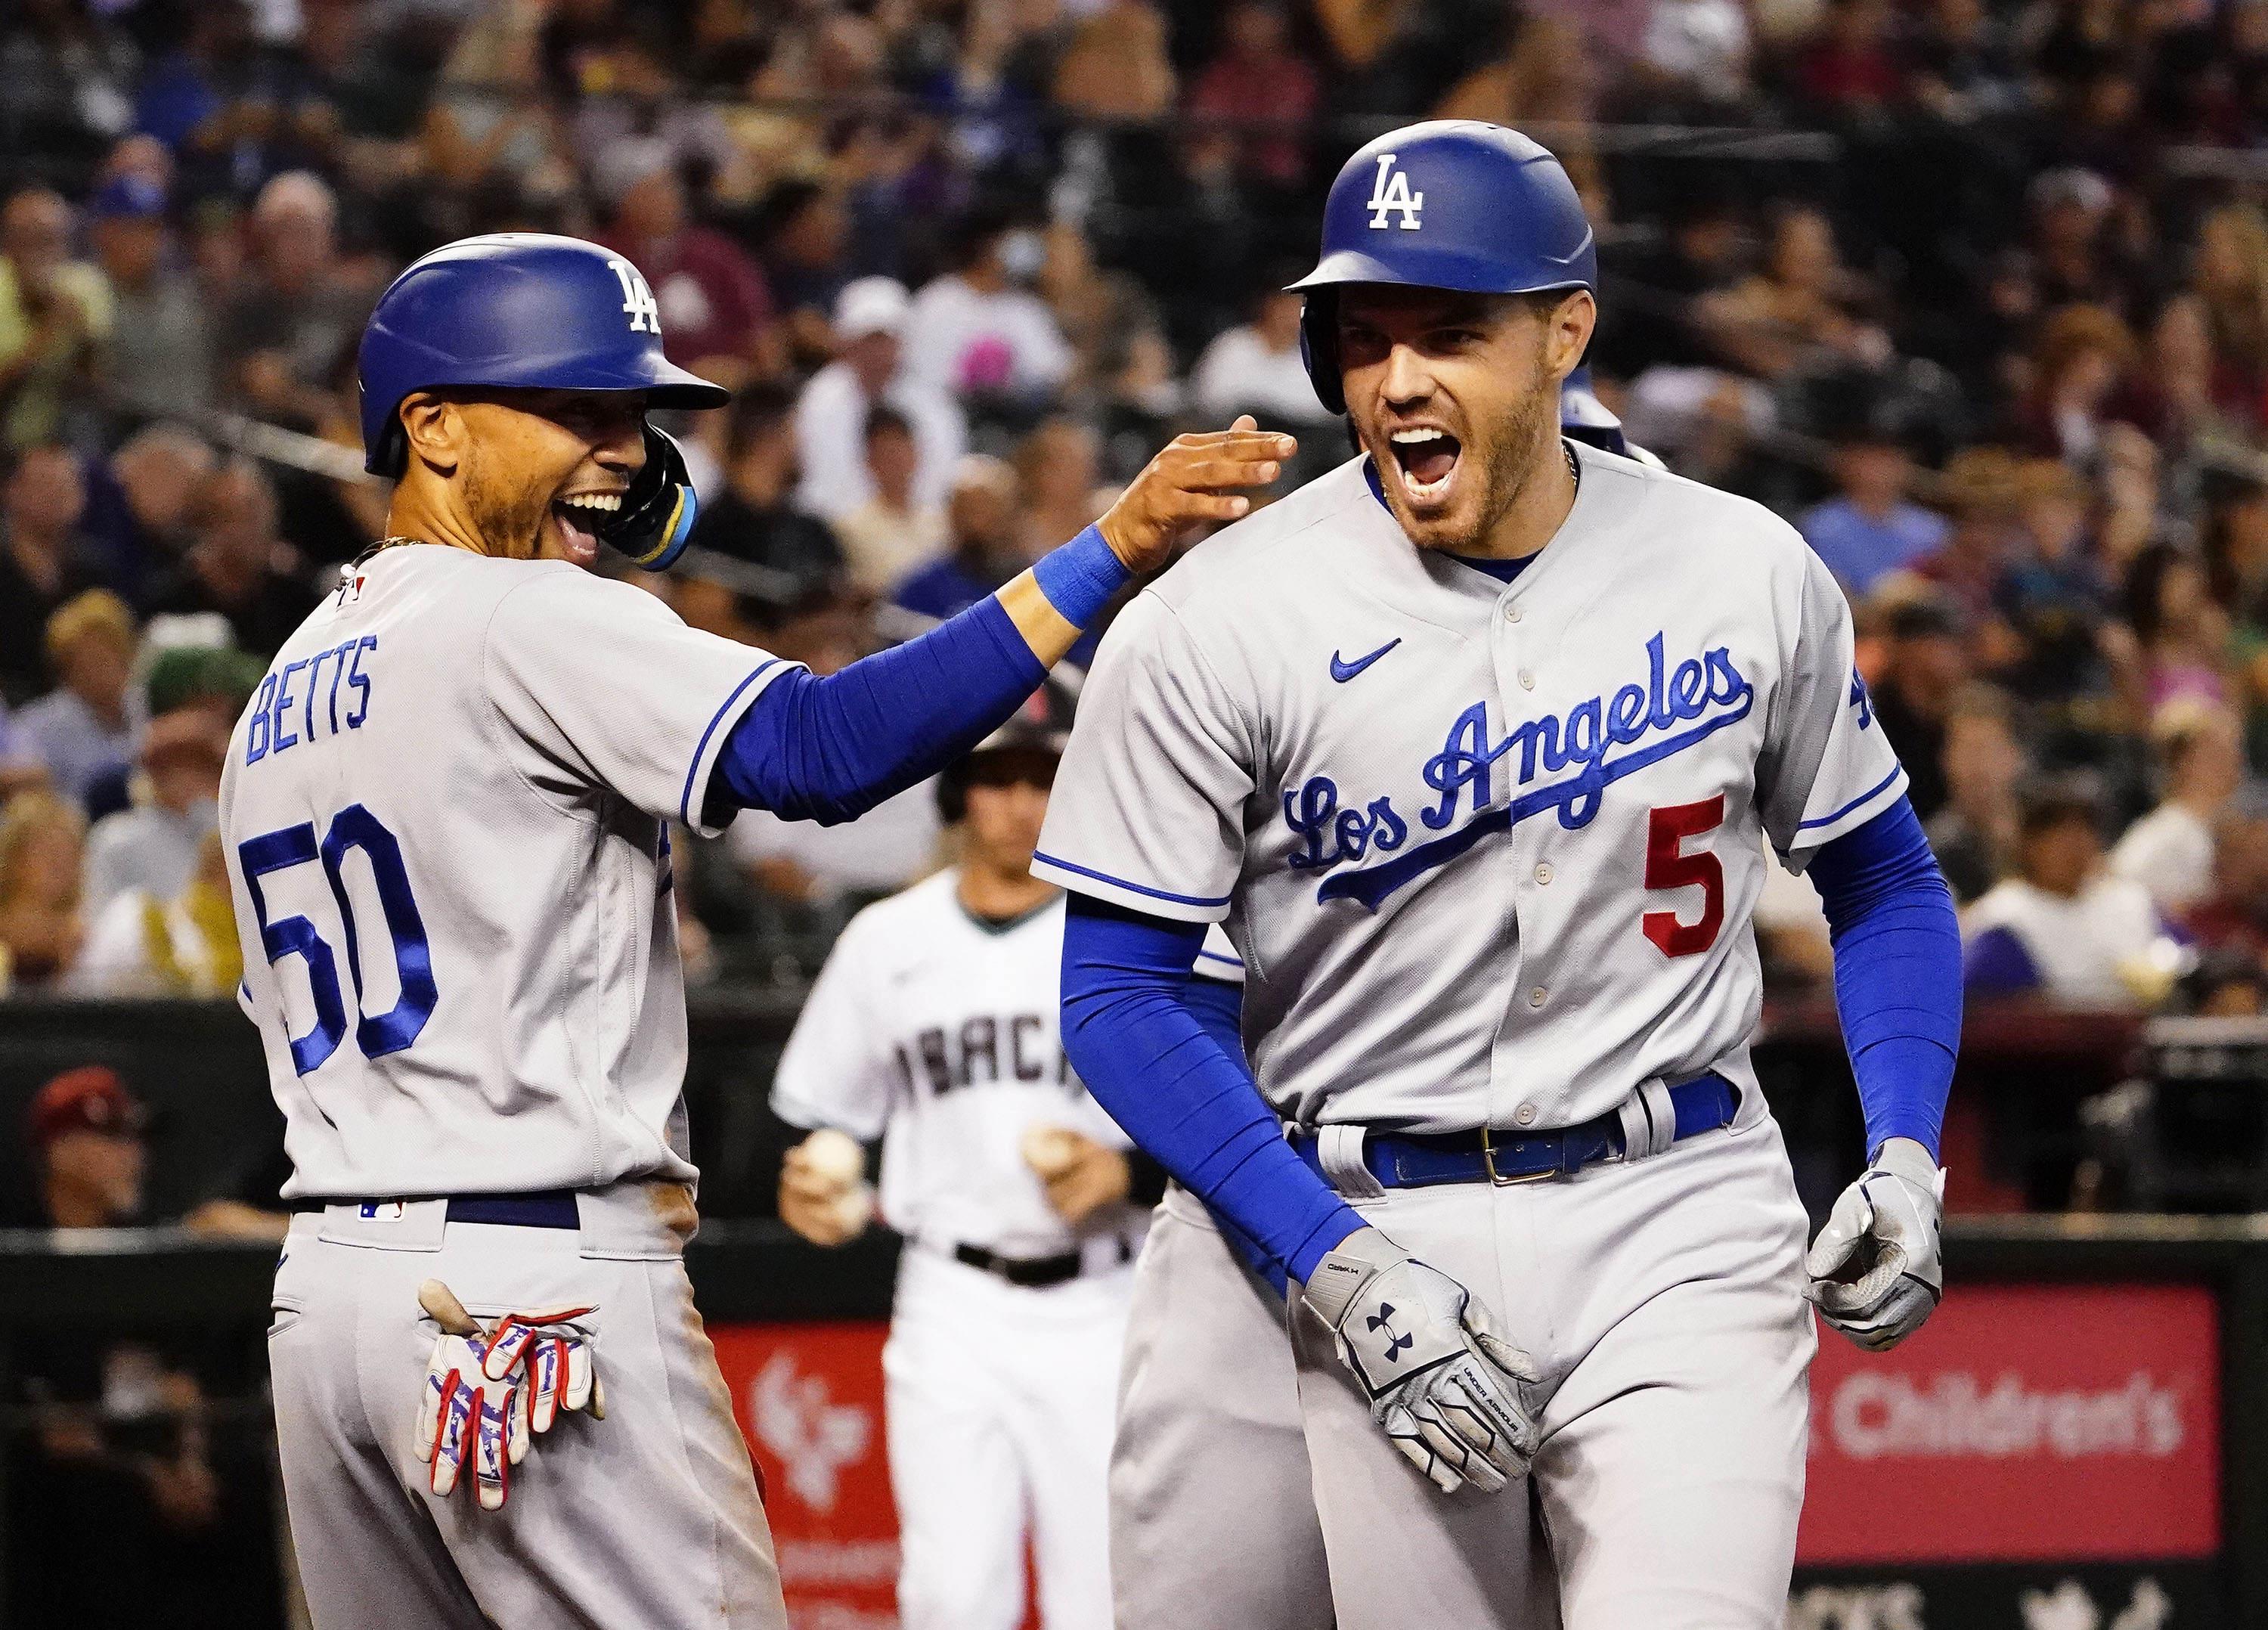 Royals vs. Dodgers: Odds, spread, over/under - July 1